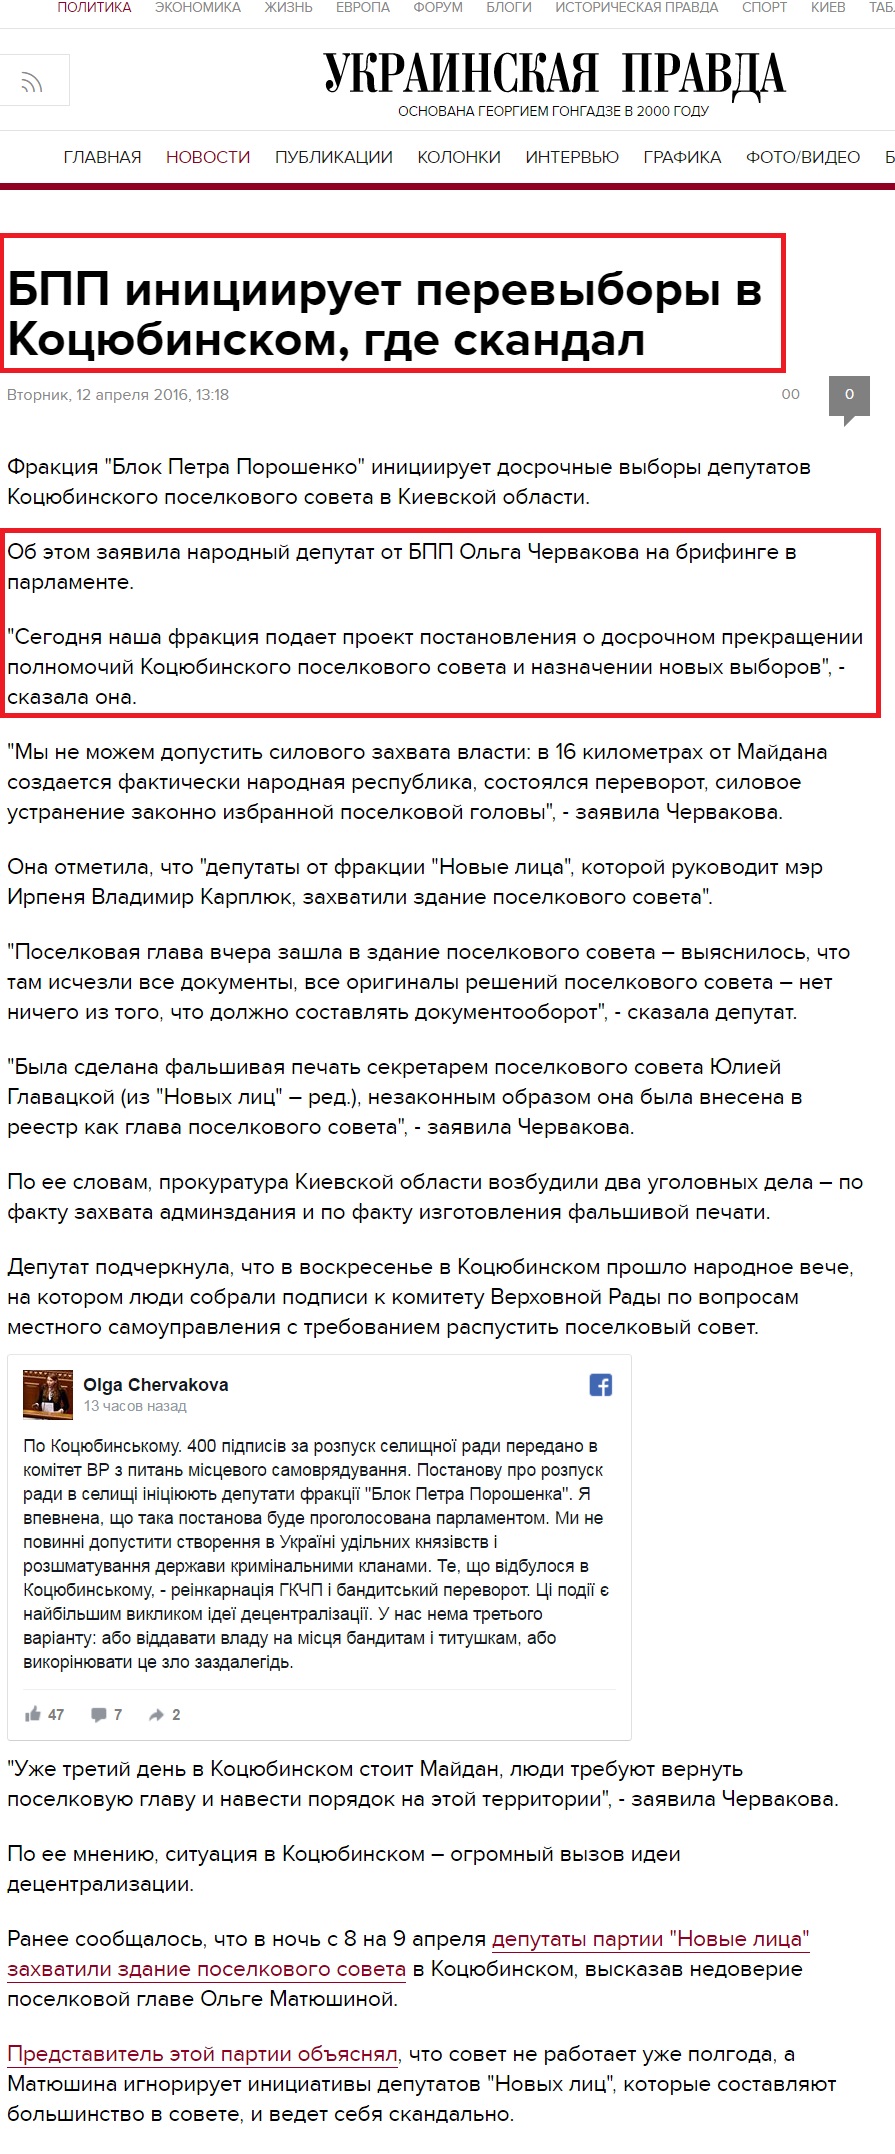 http://www.pravda.com.ua/rus/news/2016/04/12/7105239/